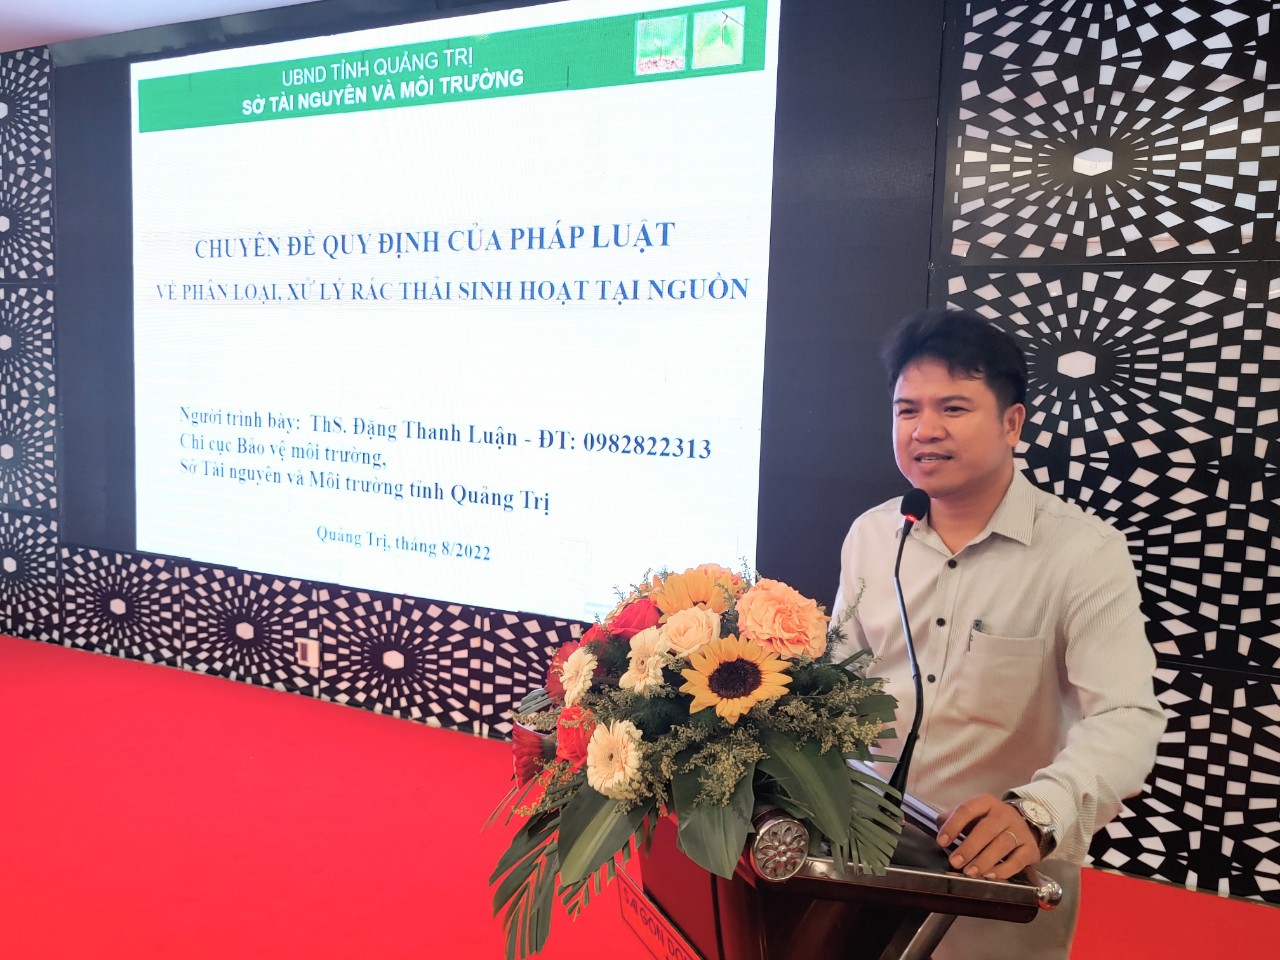 Hội nghị tuyên truyền, phổ biến chính sách, pháp luật về bảo vệ môi trường cho hội viên Hội Luật gia Việt Nam